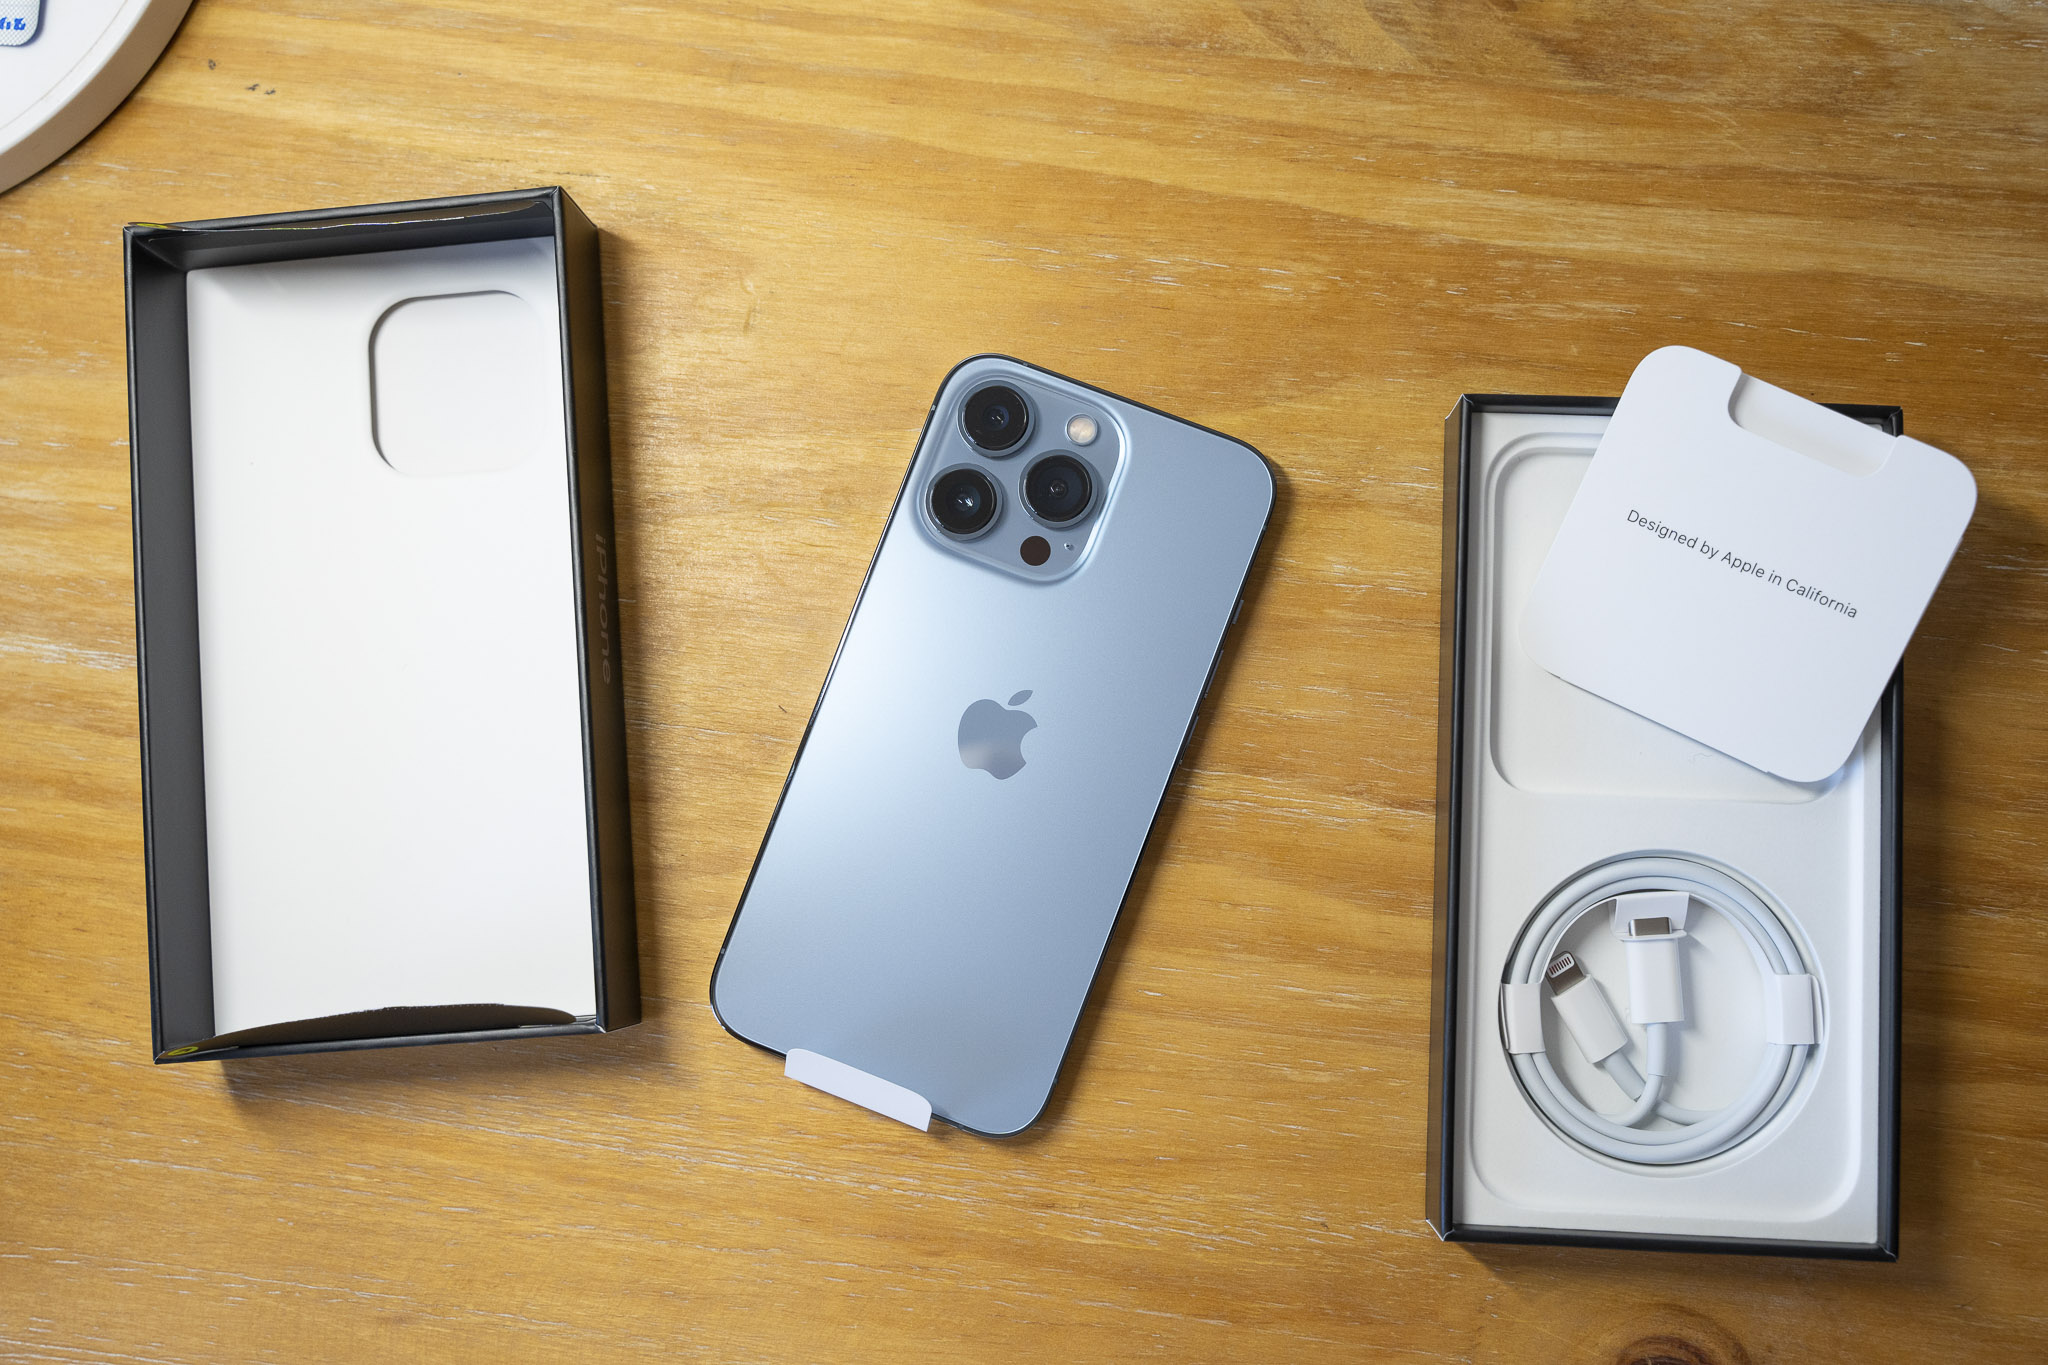 Khui hộp: Sự hồi hộp sau khi đặt mua iPhone 13 mới đã đến và giờ đây bạn muốn khám phá từng góc nhỏ của chiếc điện thoại mới này. Những hình ảnh khui hộp sẽ giúp bạn hiểu rõ hơn cấu hình của sản phẩm và cảm thấy thú vị hơn khi trải nghiệm dòng sản phẩm mới nhất của Apple. Hãy xem ngay khui hộp iPhone 13 mới bạn nhé!